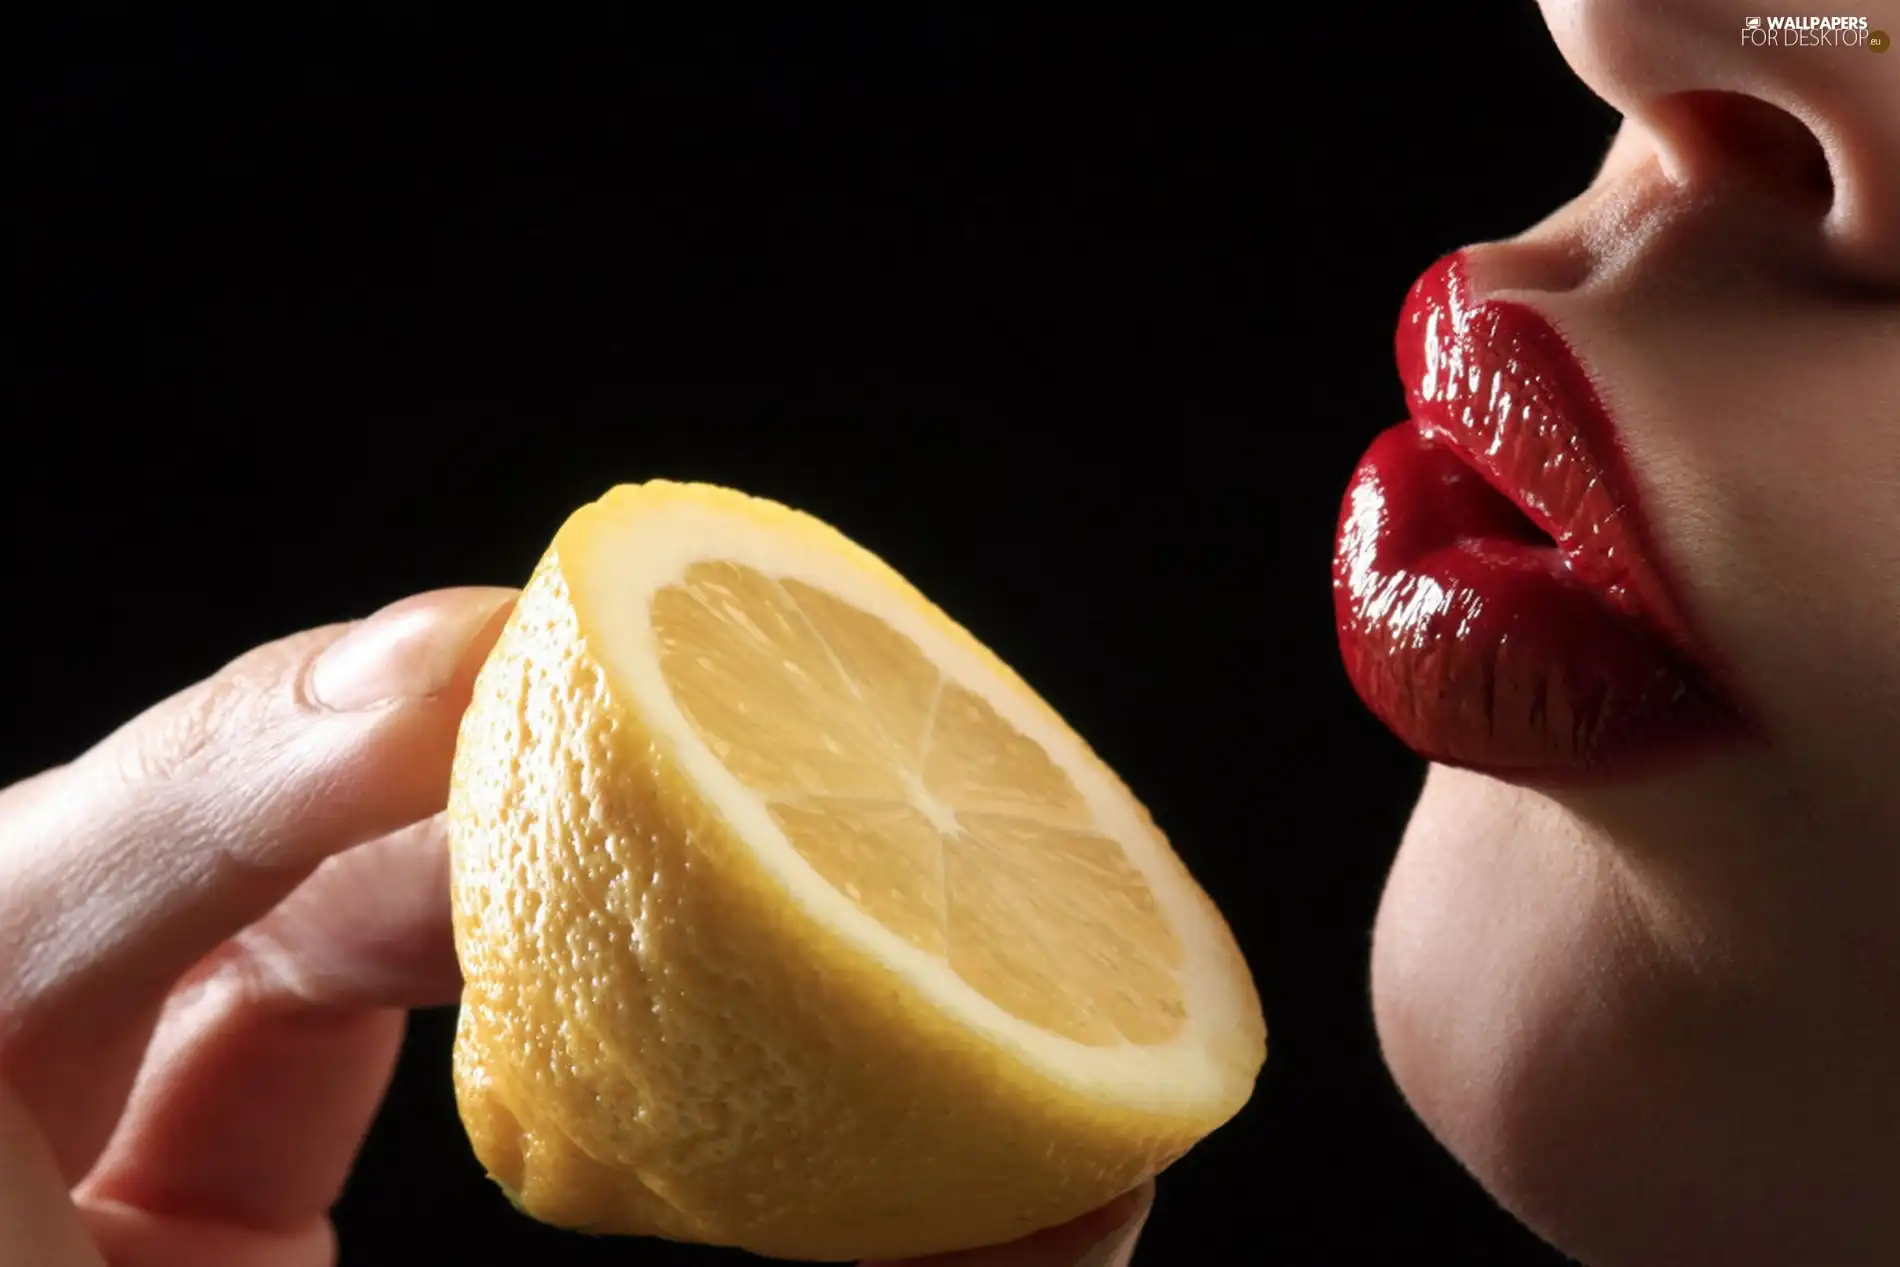 Lemon, Women, lips